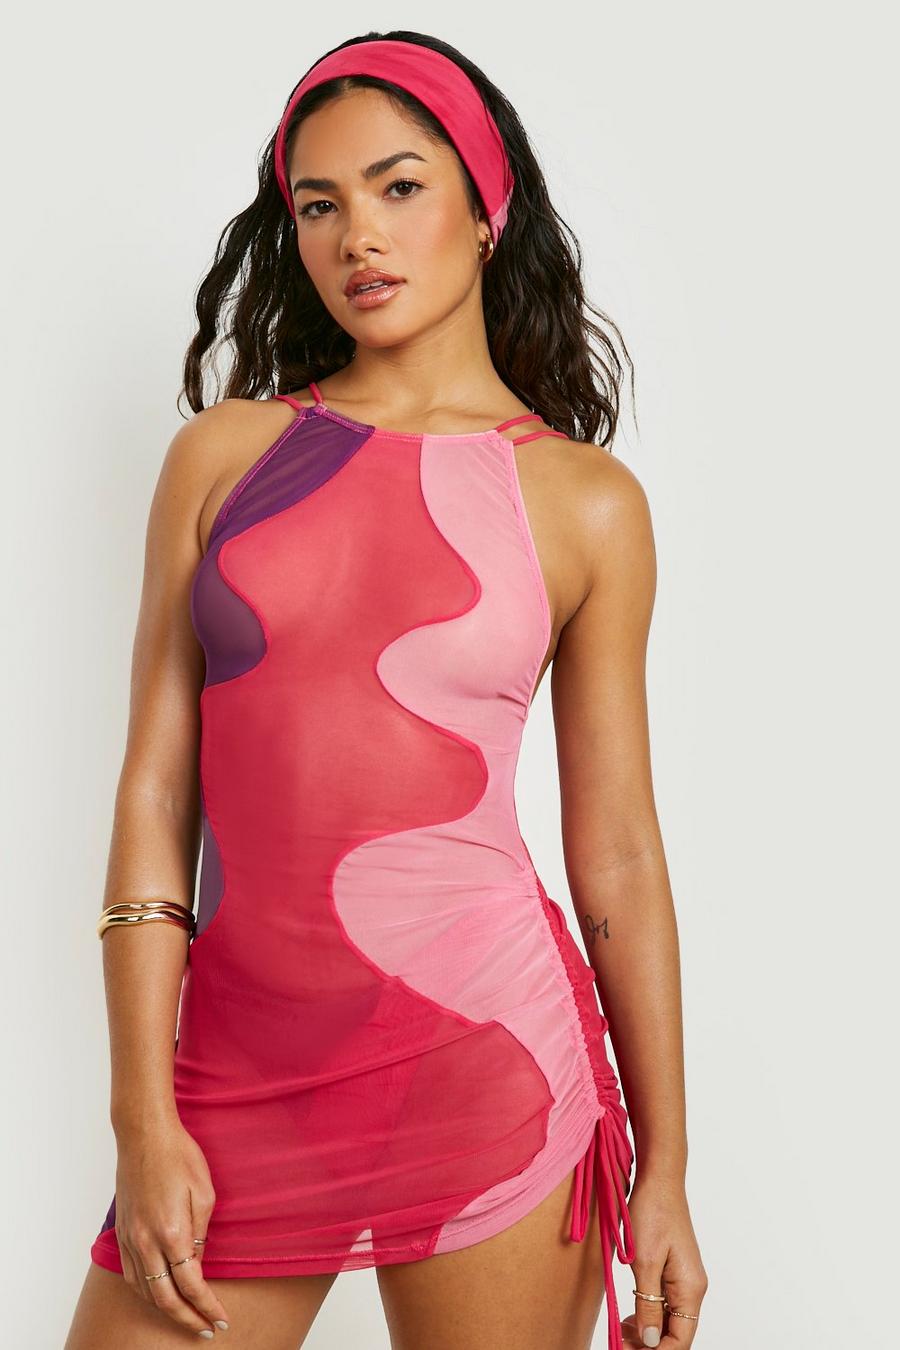 ורוד rosa שמלת חוף מיני מחטבת מבד רשת עם קפלים וכתפיות דקות image number 1